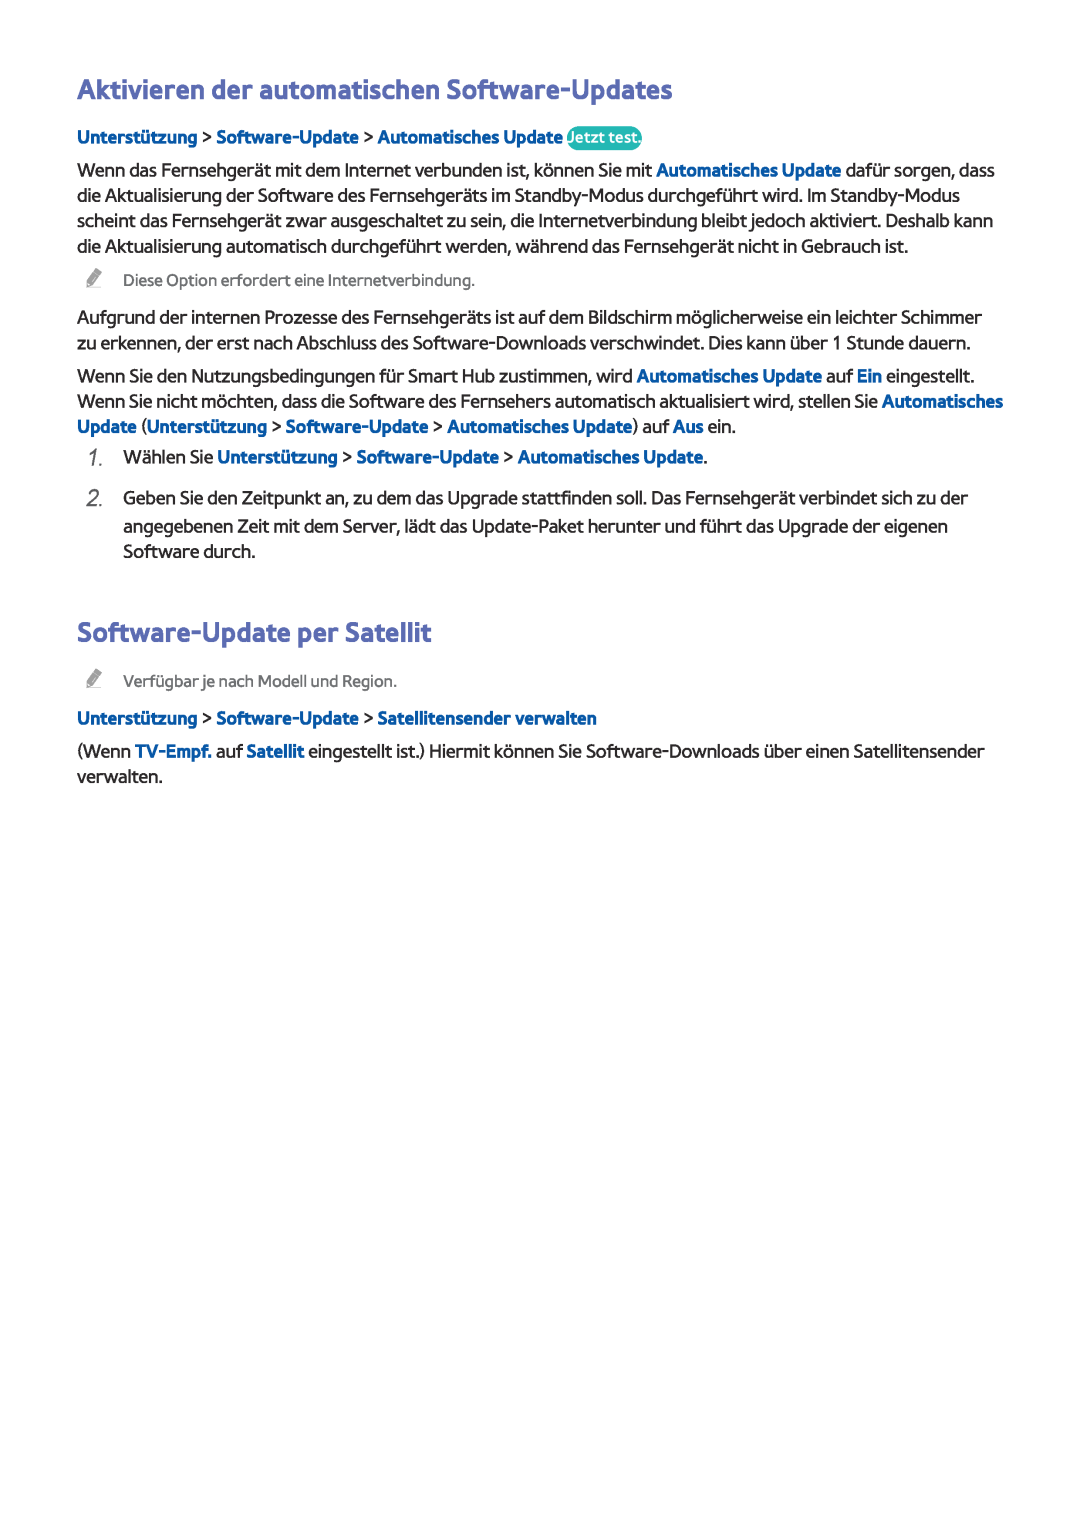 Samsung UE58J5200AWXZF, UE40J5250SSXZG manual Aktivieren der automatischen Software-Updates, Software-Update per Satellit 